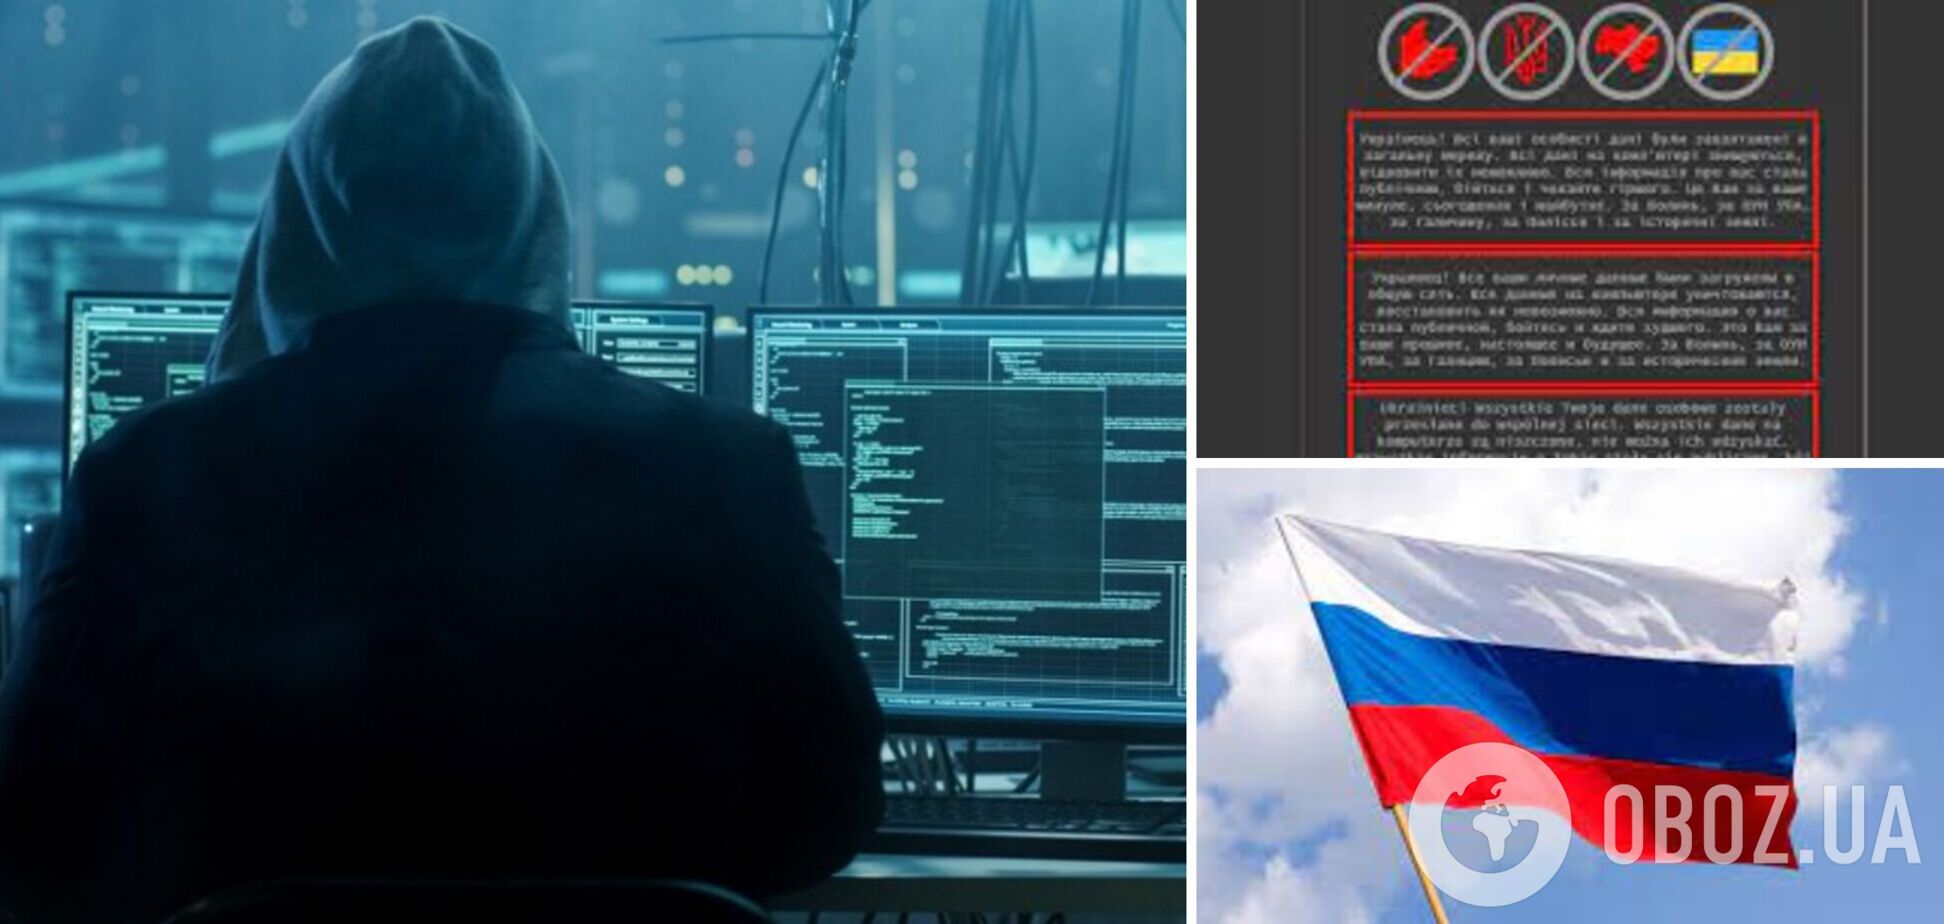 Експерти знайшли російський слід у кібератаці на українські державні сайти